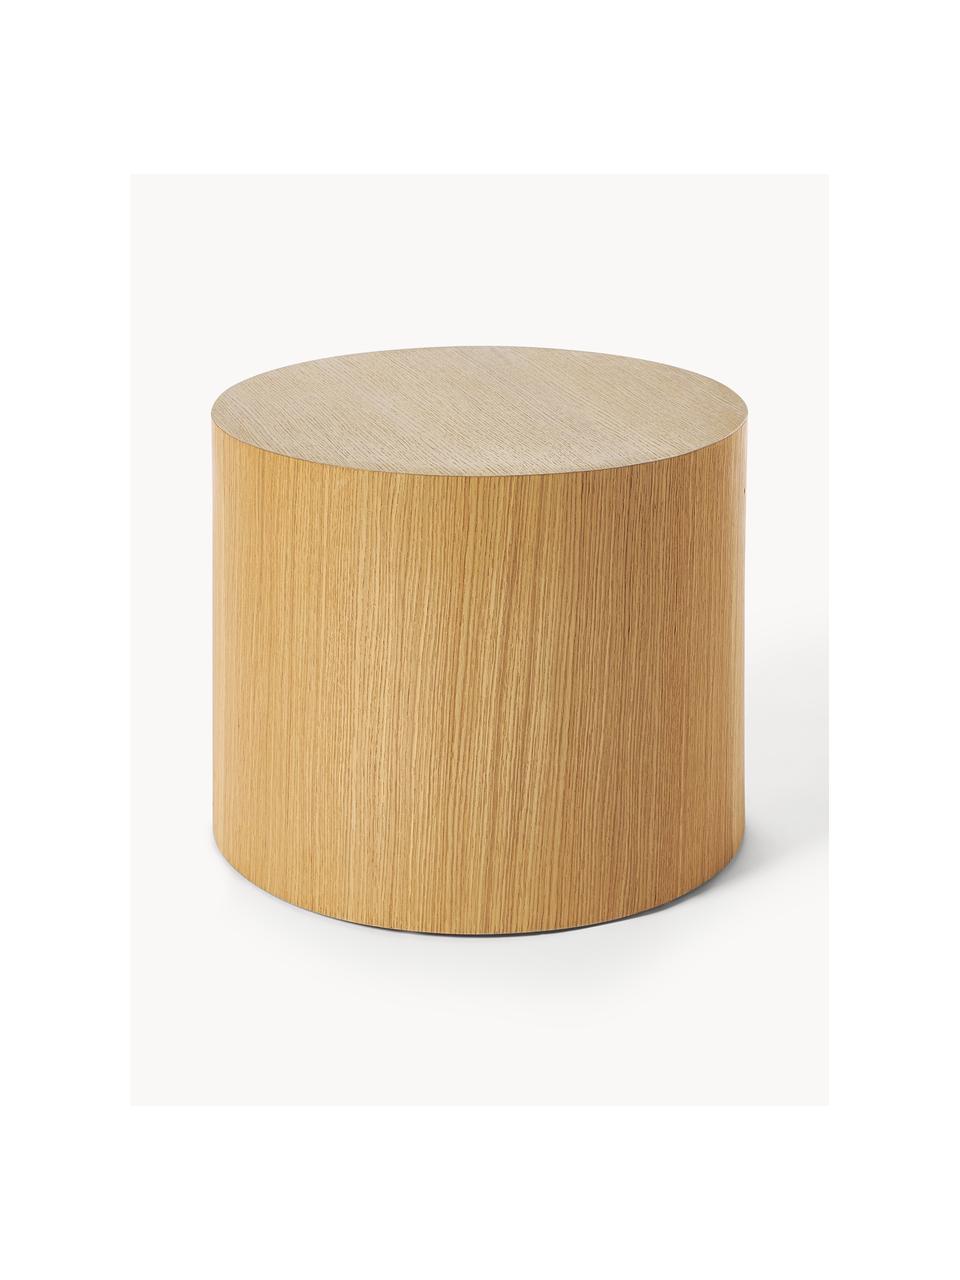 Sada dřevěných konferenčních stolků Dan, 2 díly, MDF deska (dřevovláknitá deska střední hustoty) s dubovou dýhou, Dubové dřevo, Sada s různými velikostmi